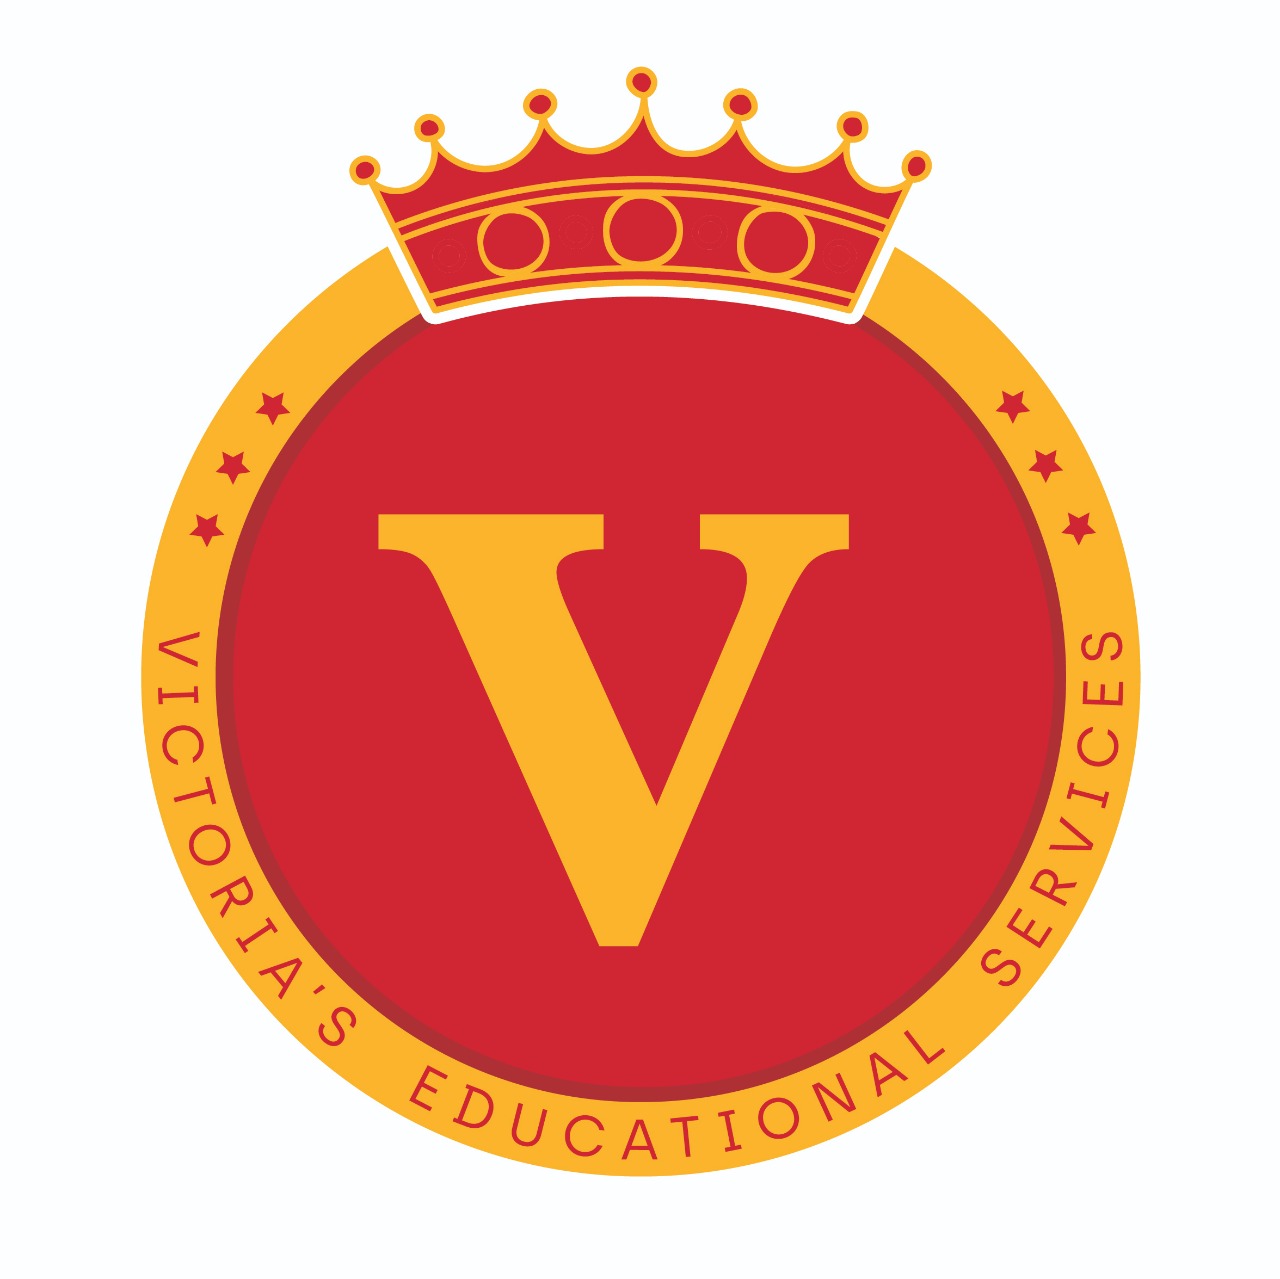 Victorias Educational Services Pvt Ltd